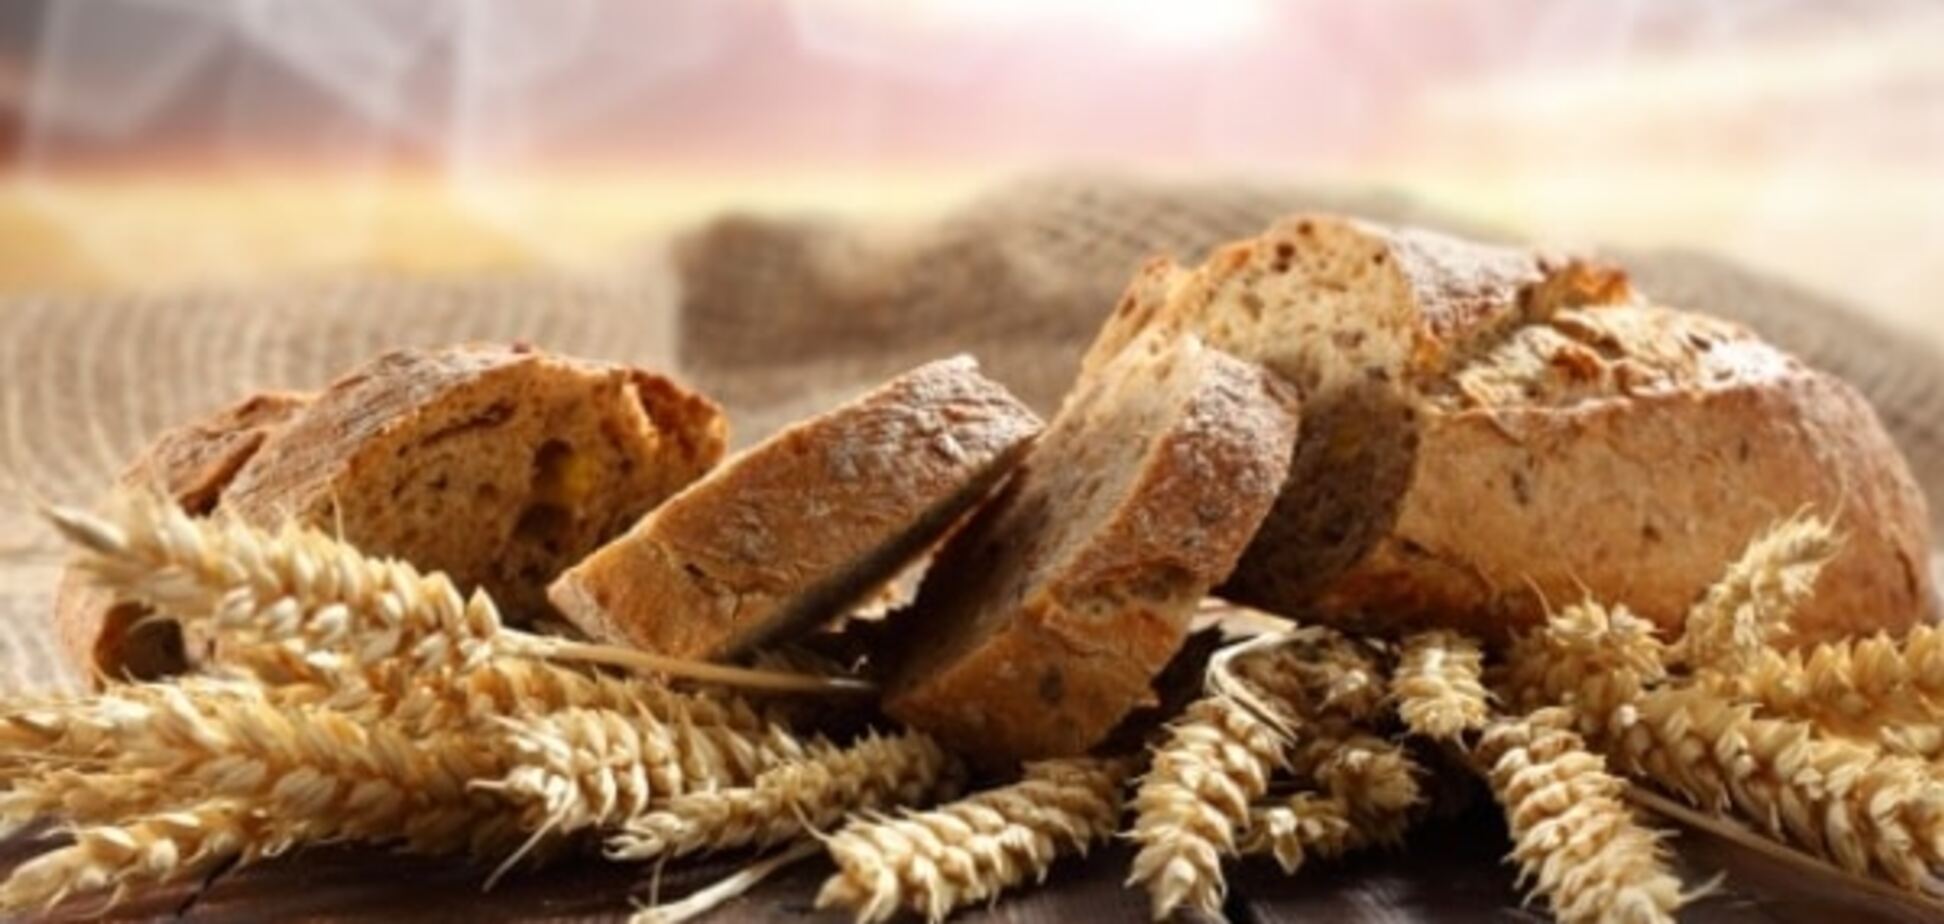 Хлеб как продукт роскоши в 2016-м?!.. Прогноз